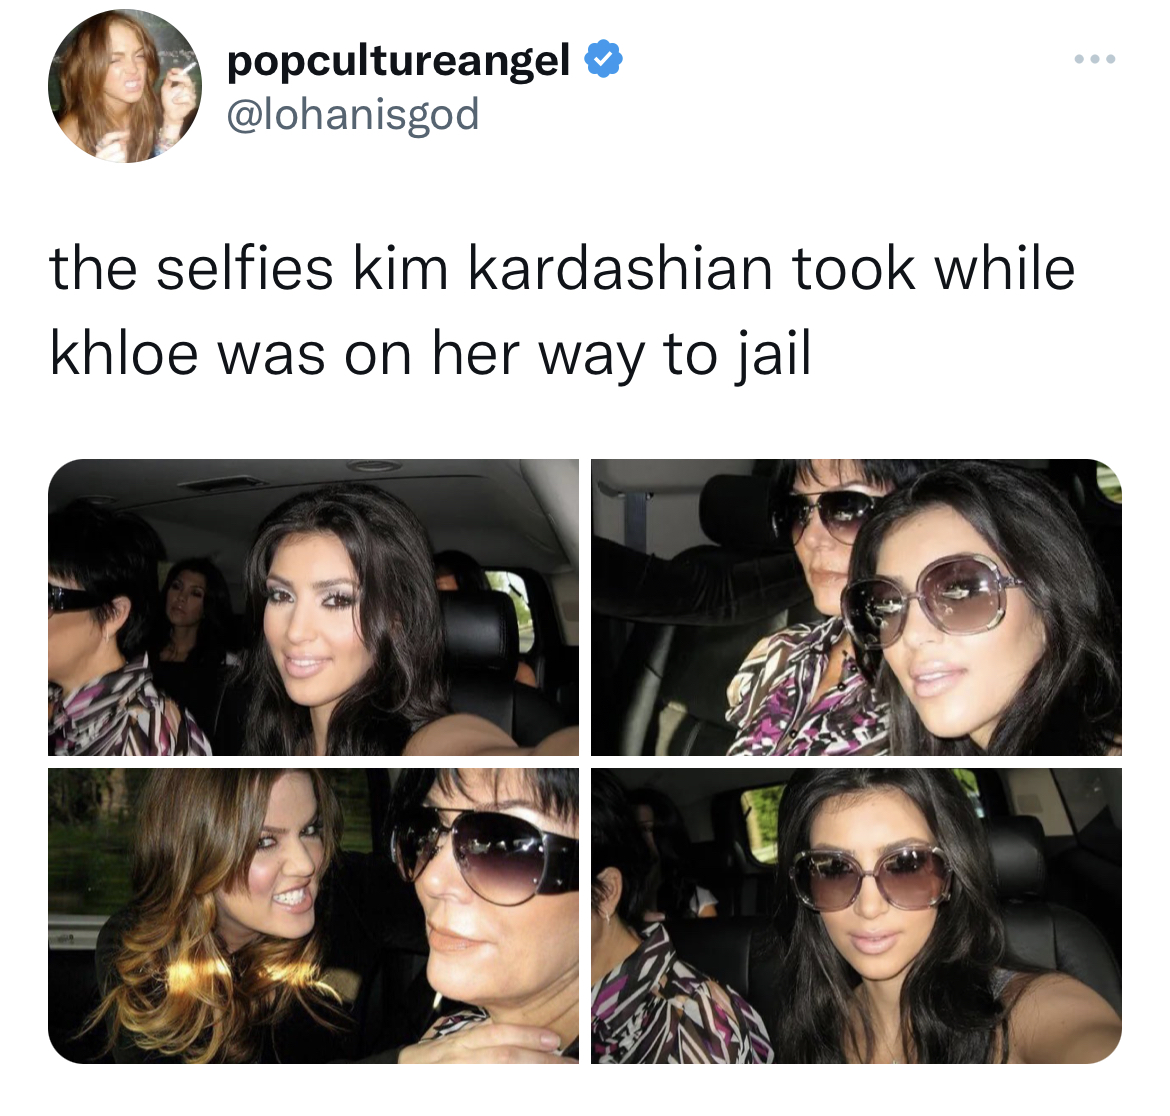 Tweets roasting celebrities - eyewear - popcultureangel the selfies kim kardashian took while khloe was on her way to jail